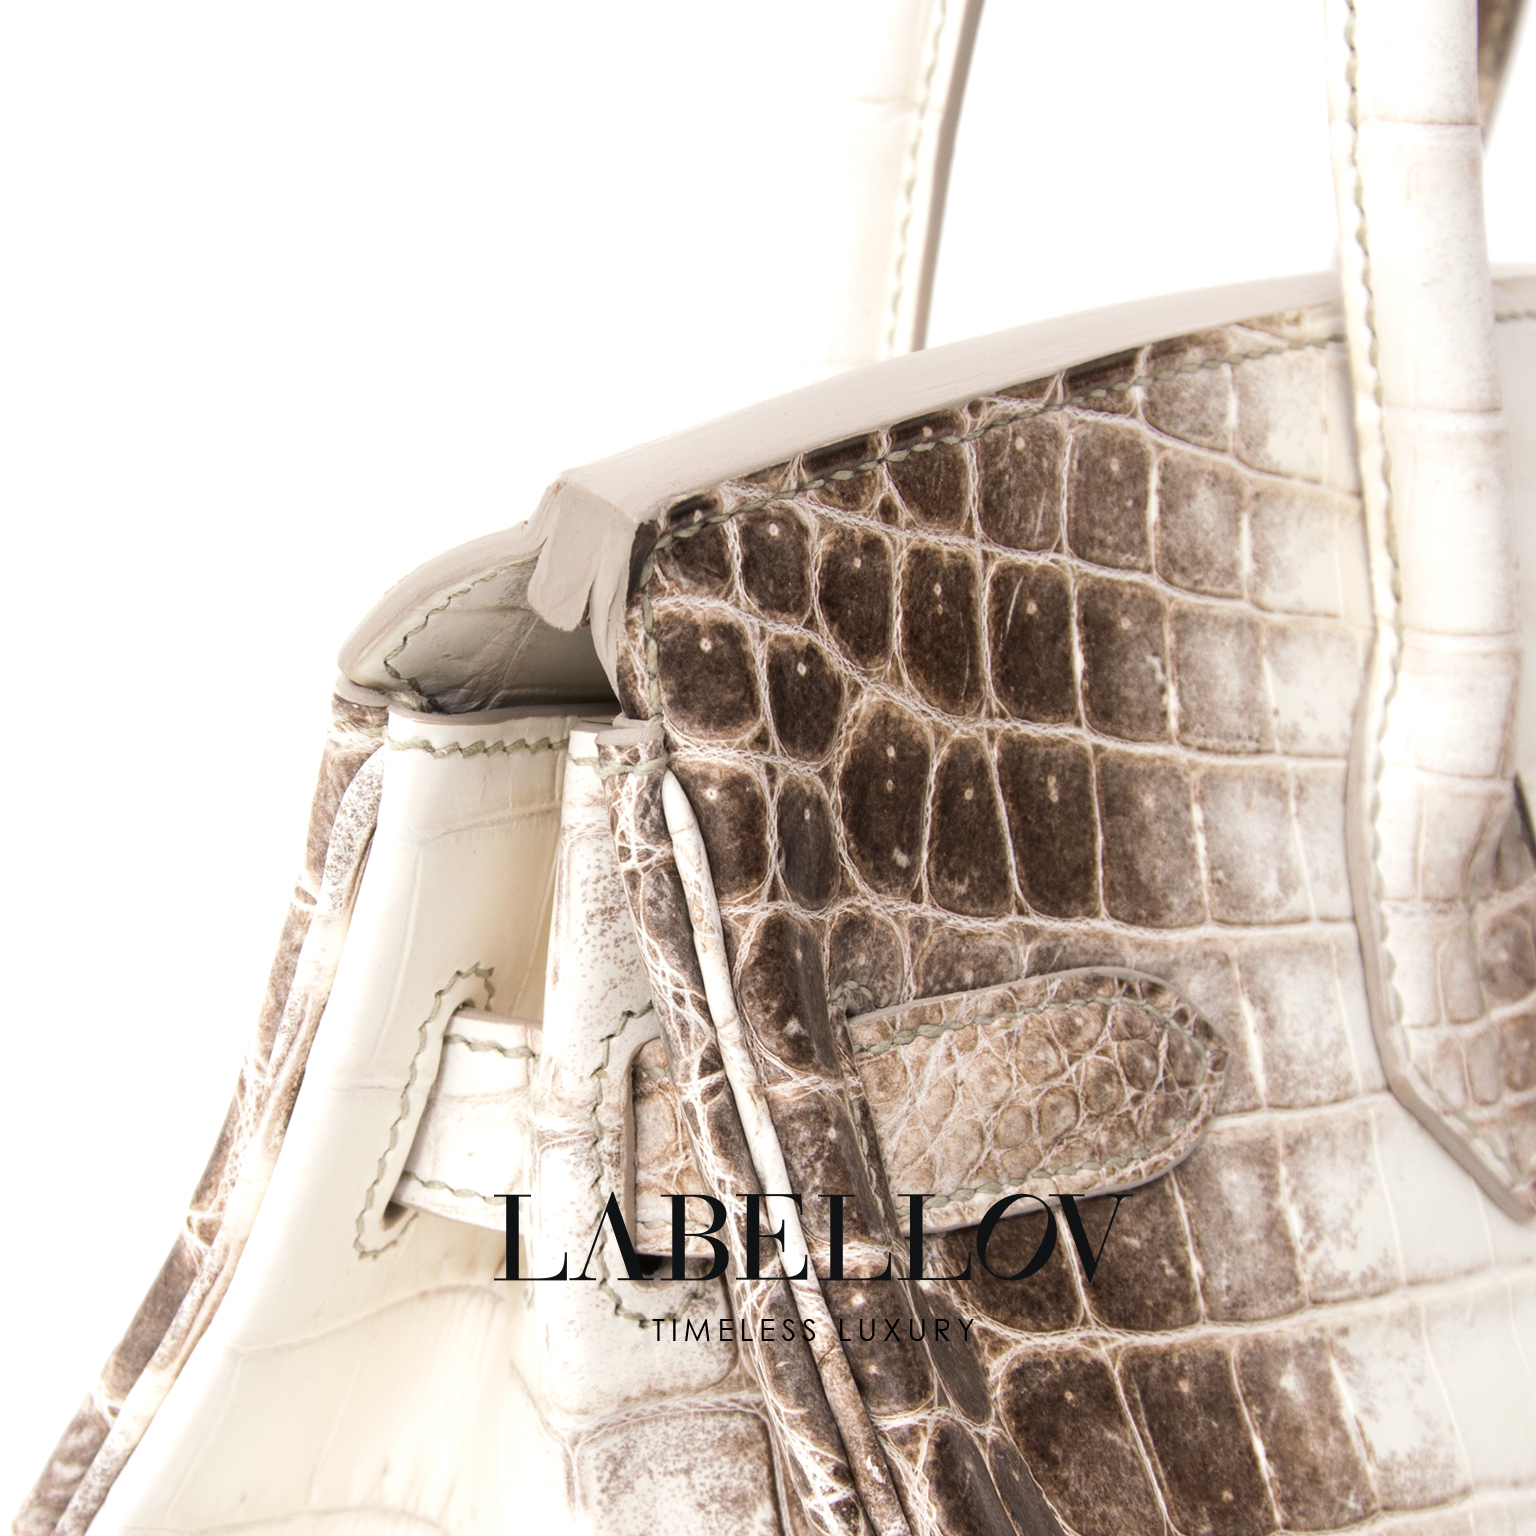 Hermès Birkin 25 Himalaya Niloticus Crocodile PHW ○ Labellov